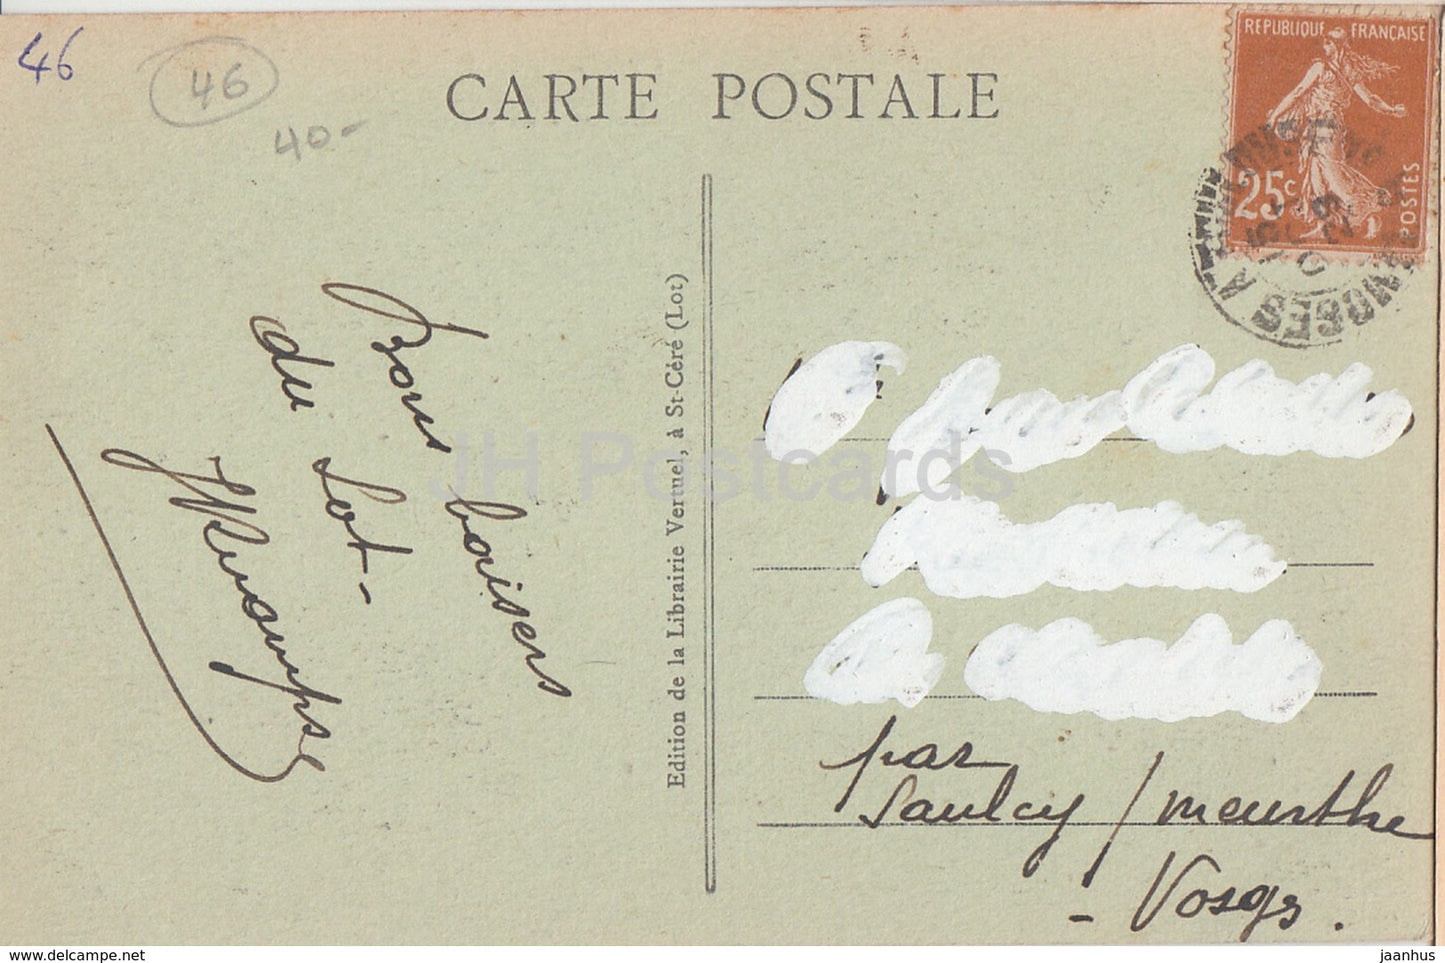 Le Chateau d'Assier - Portrait et Signature de Galiot de Genouillac - Schloss - 683 - alte Postkarte - 1929 - Frankreich - gebraucht